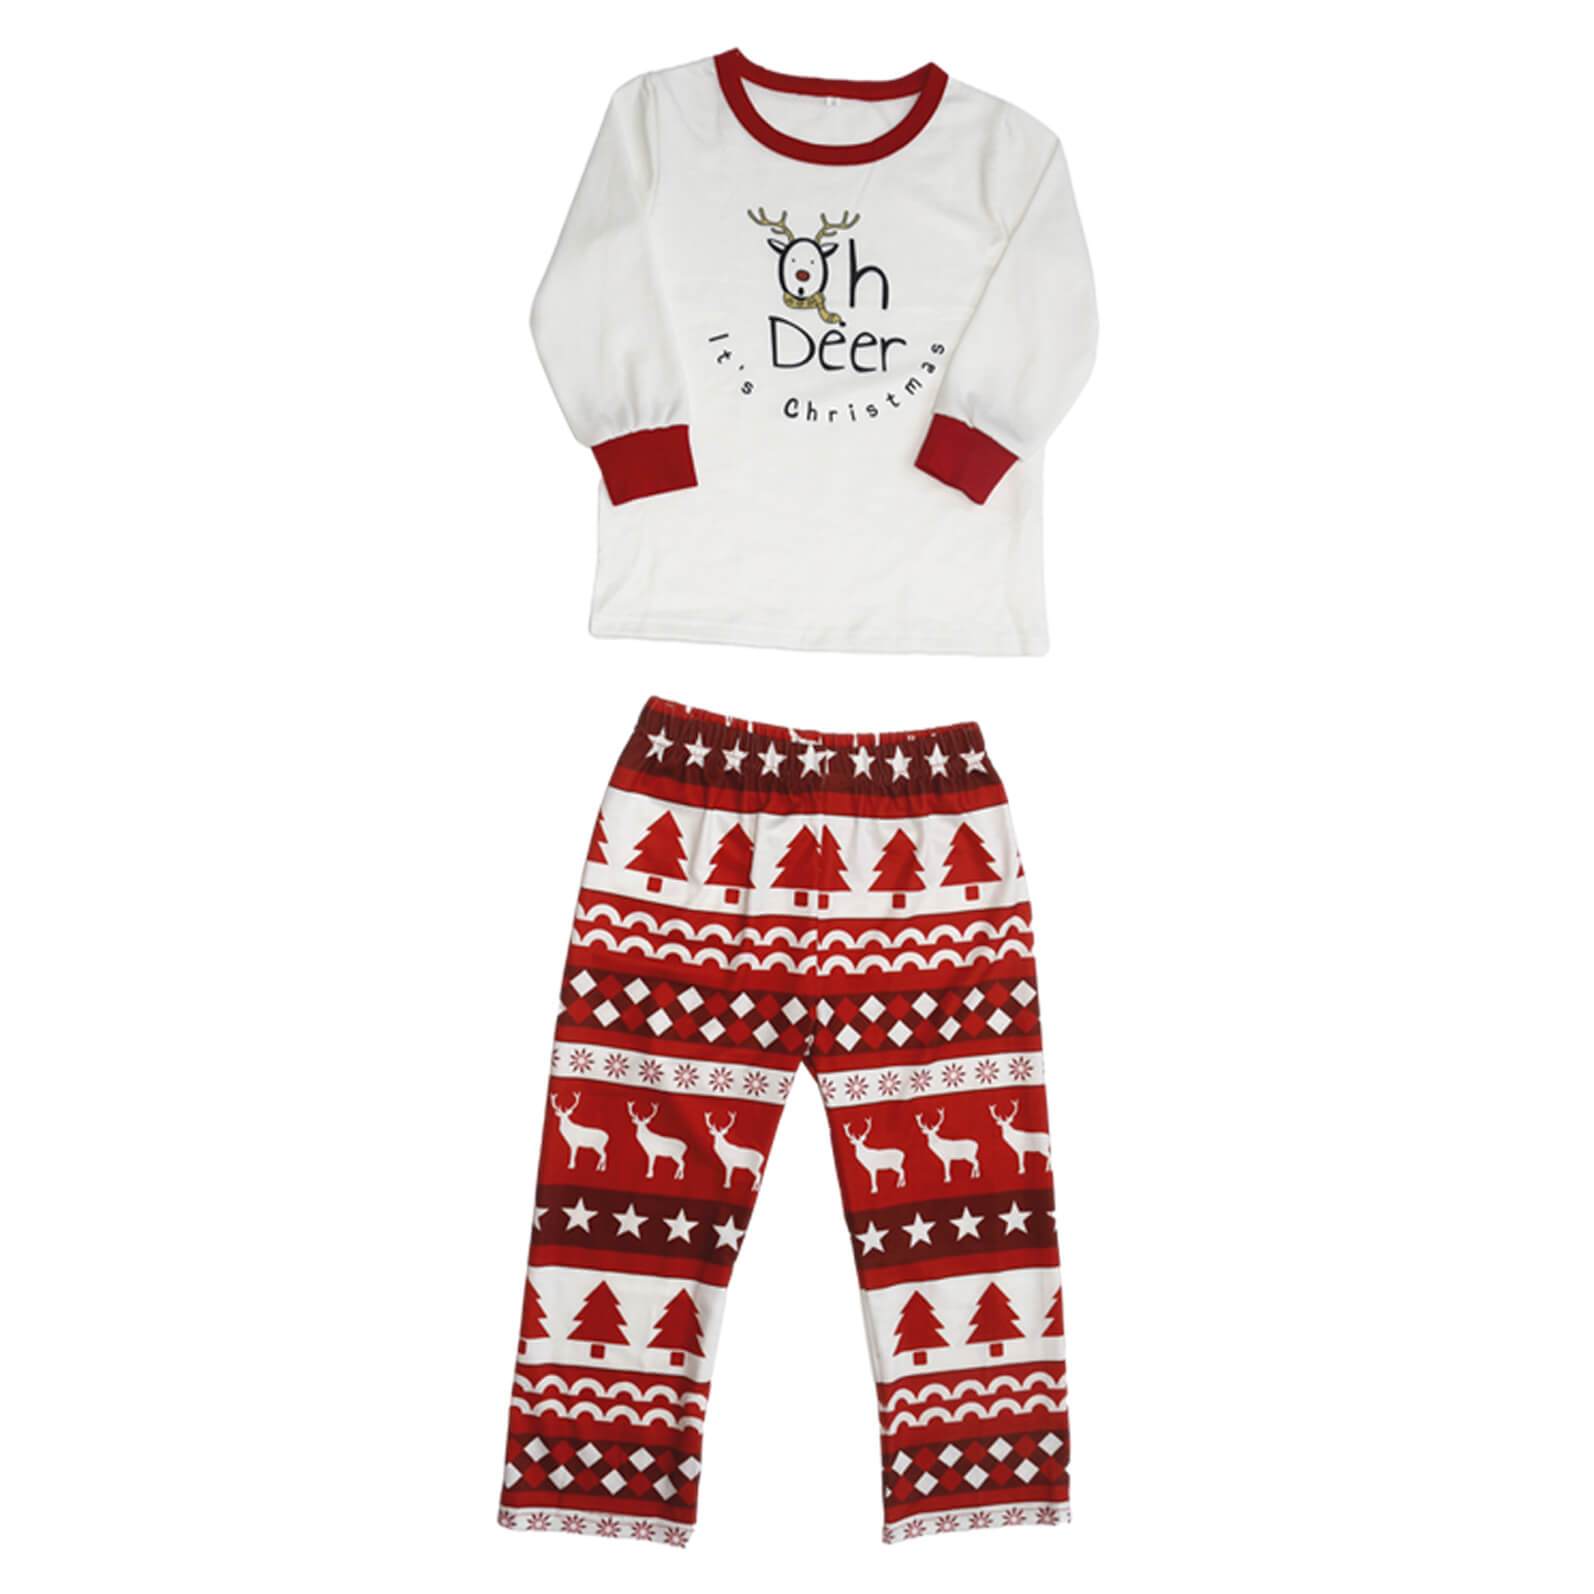 'Oh Deer It's Chrismas' Letter Print top and Cute Cartoon Print Pants Family Matching Pajamas Set With Pet Pajamas